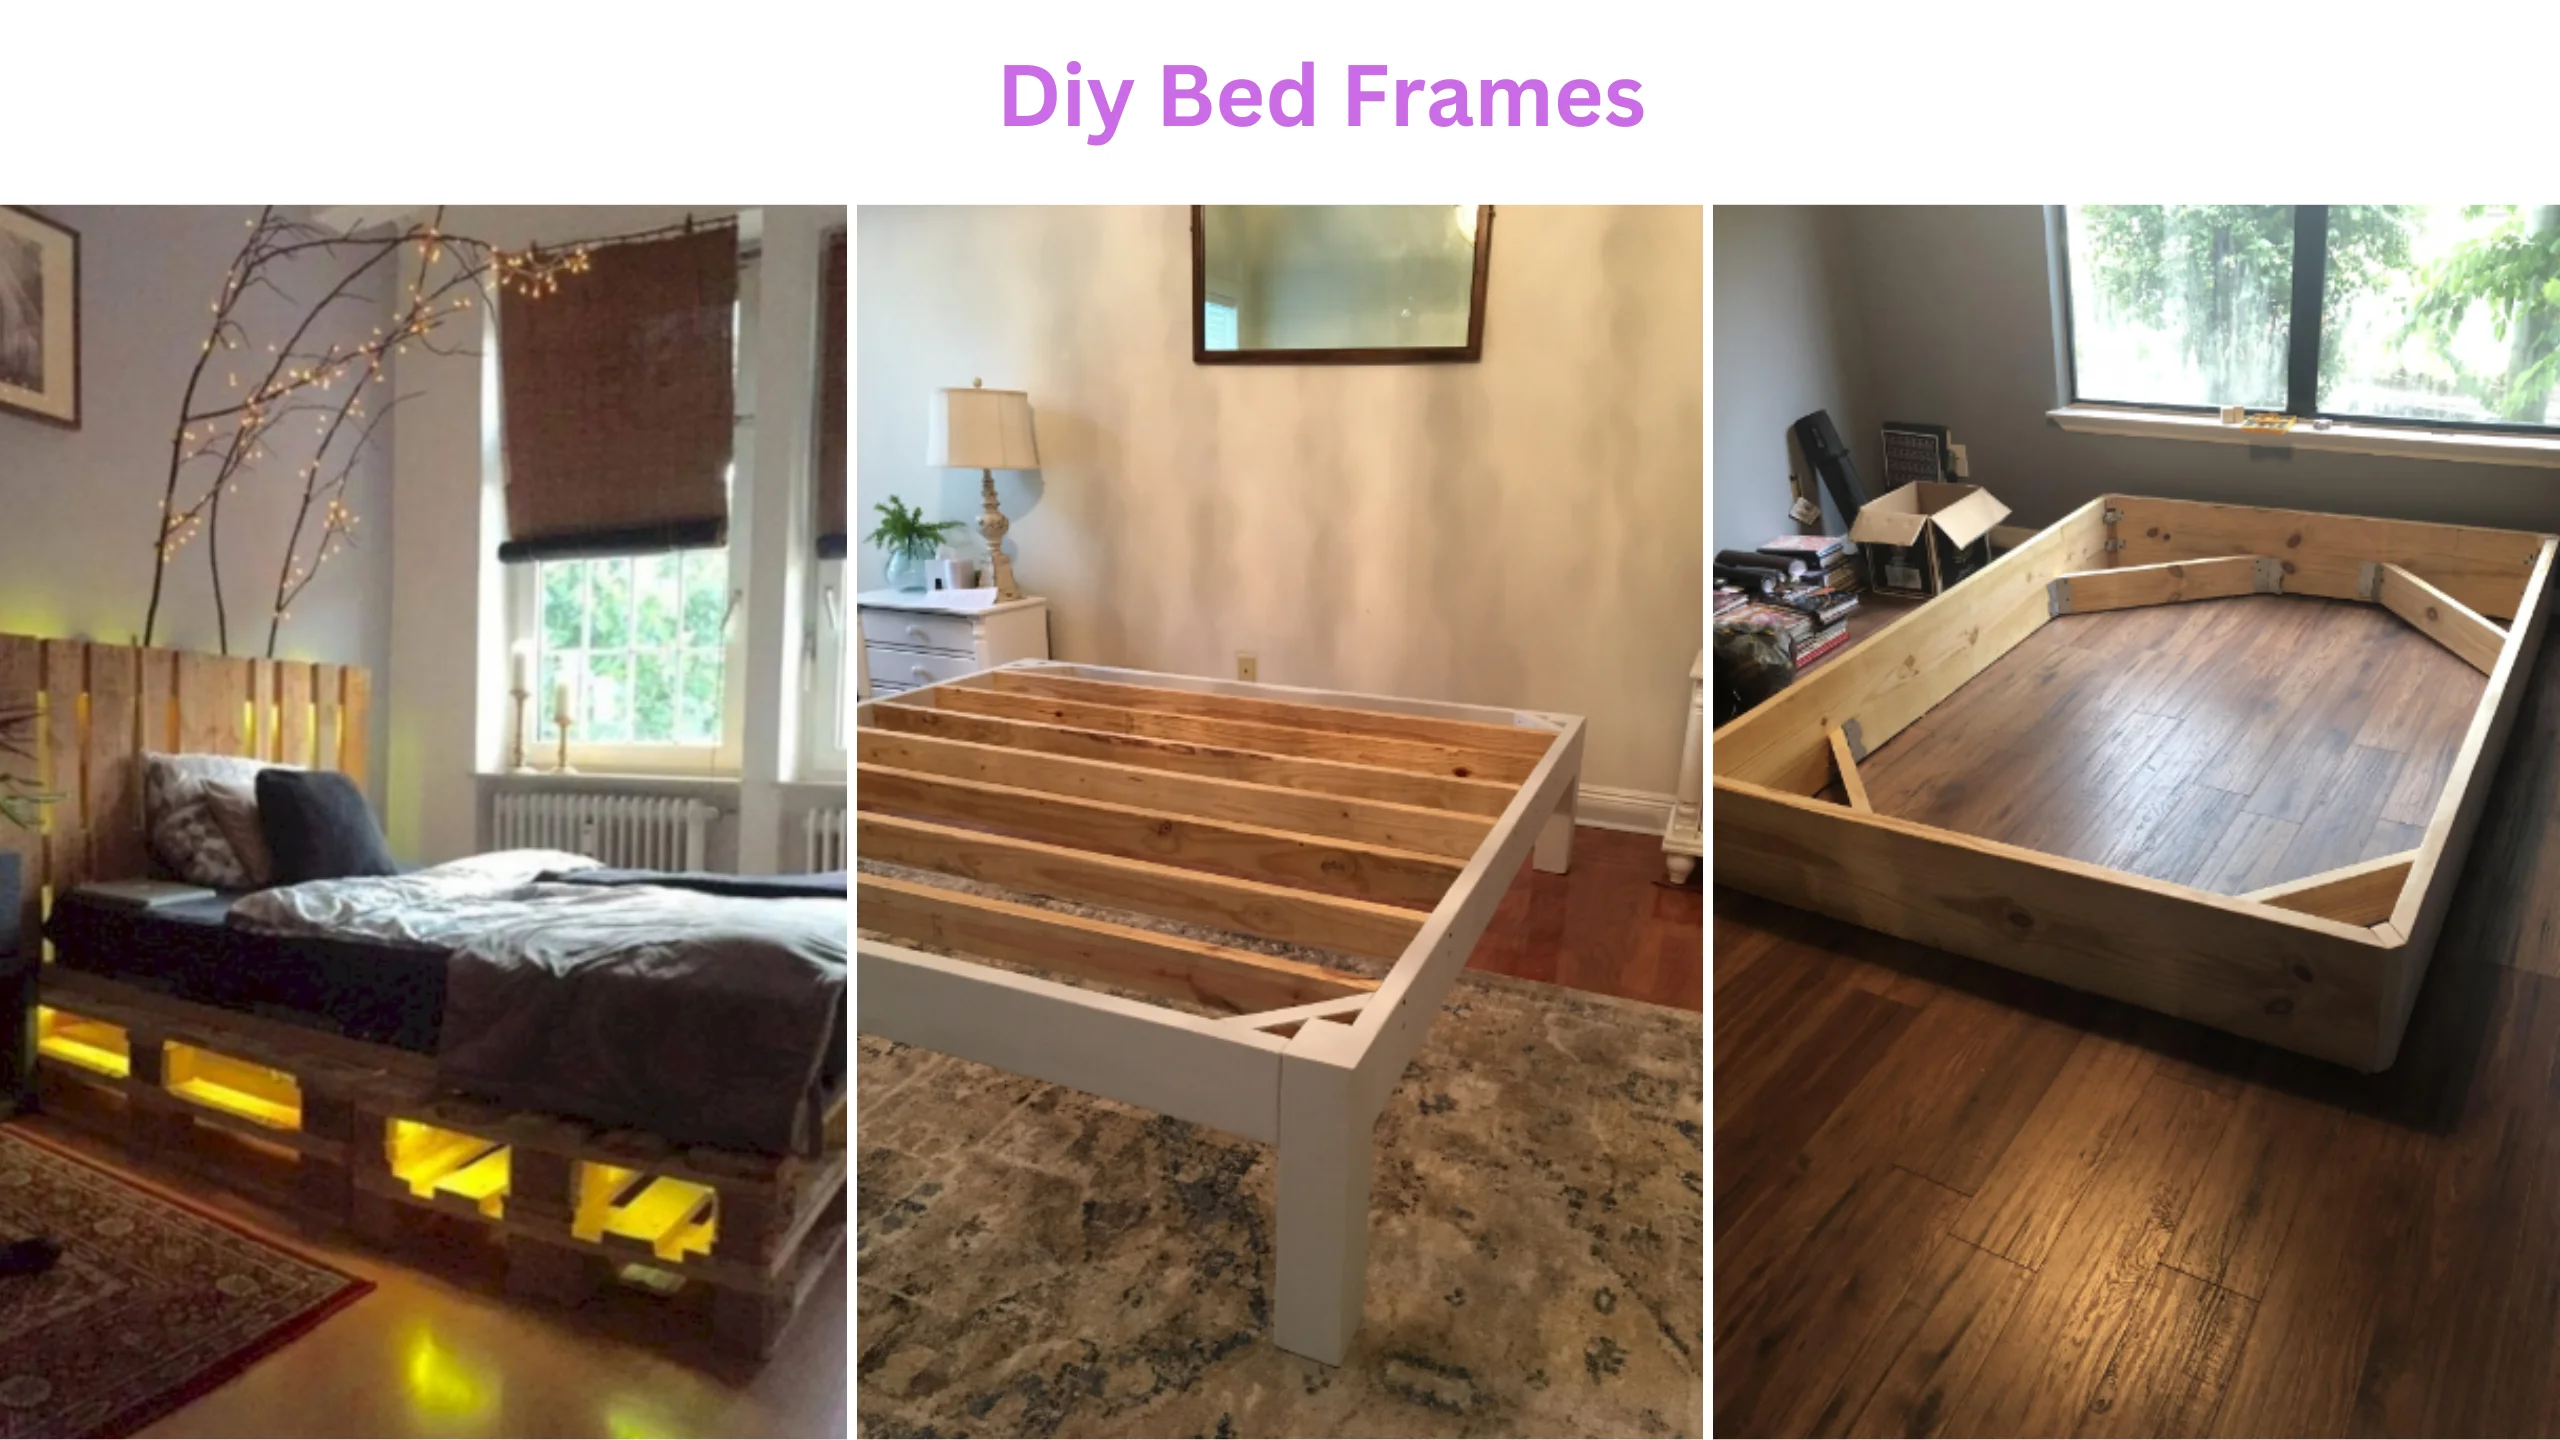 Diy bed frames 2